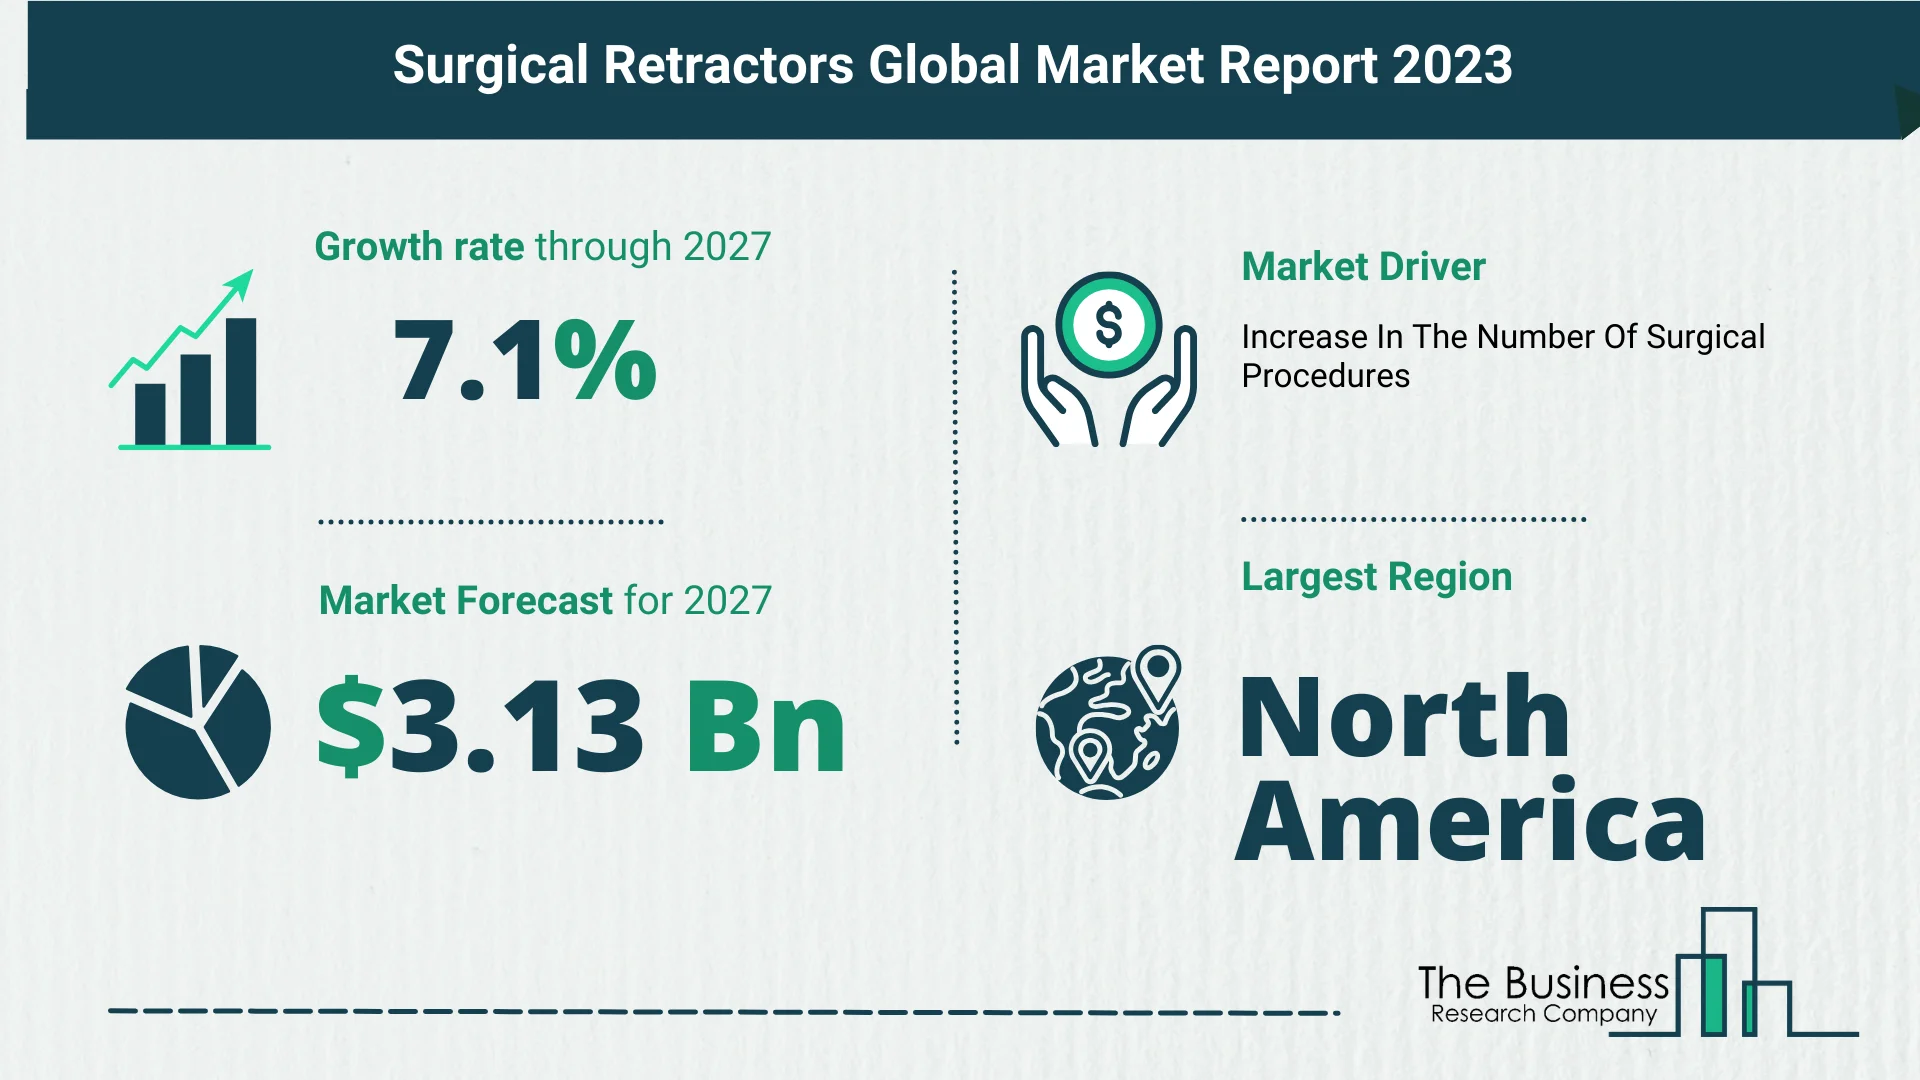 Global Surgical Retractors Market